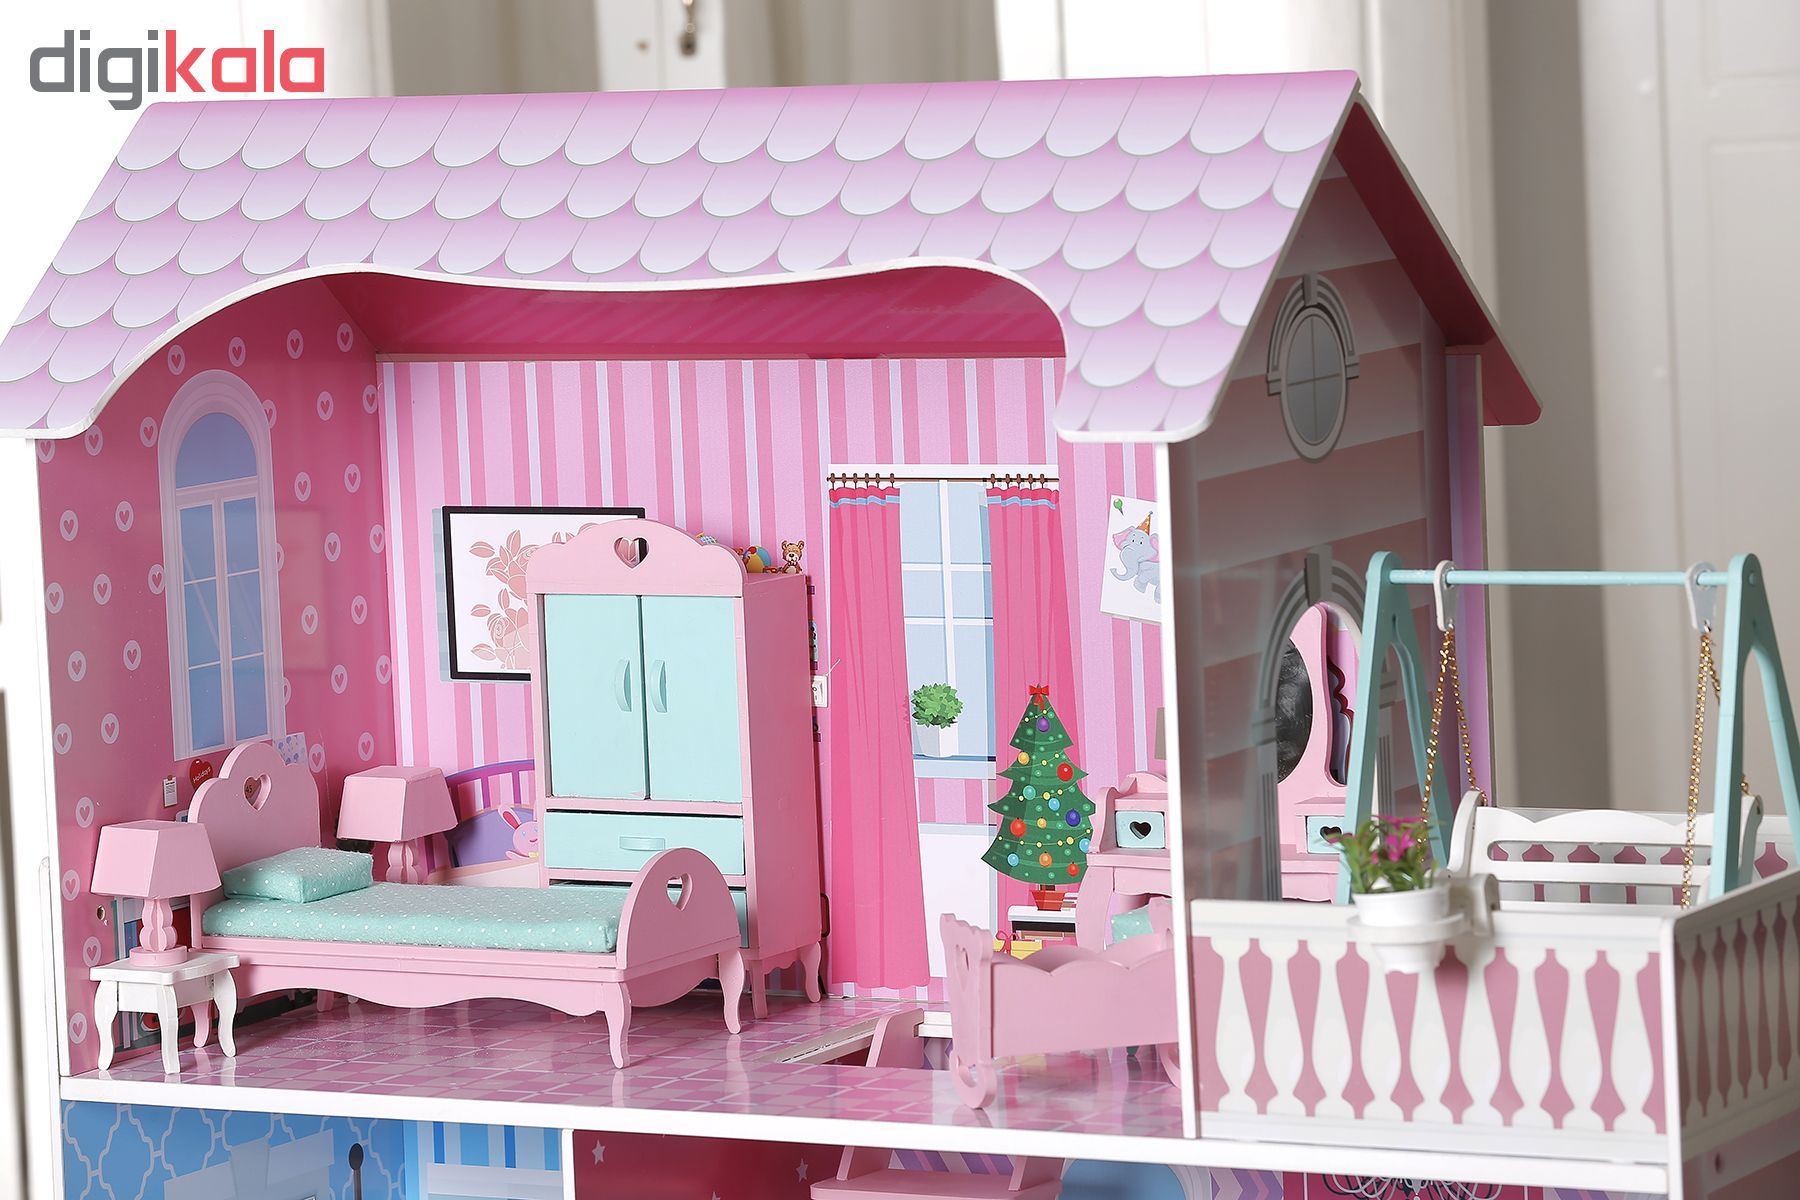 خانه عروسک مدل dream house کد 104